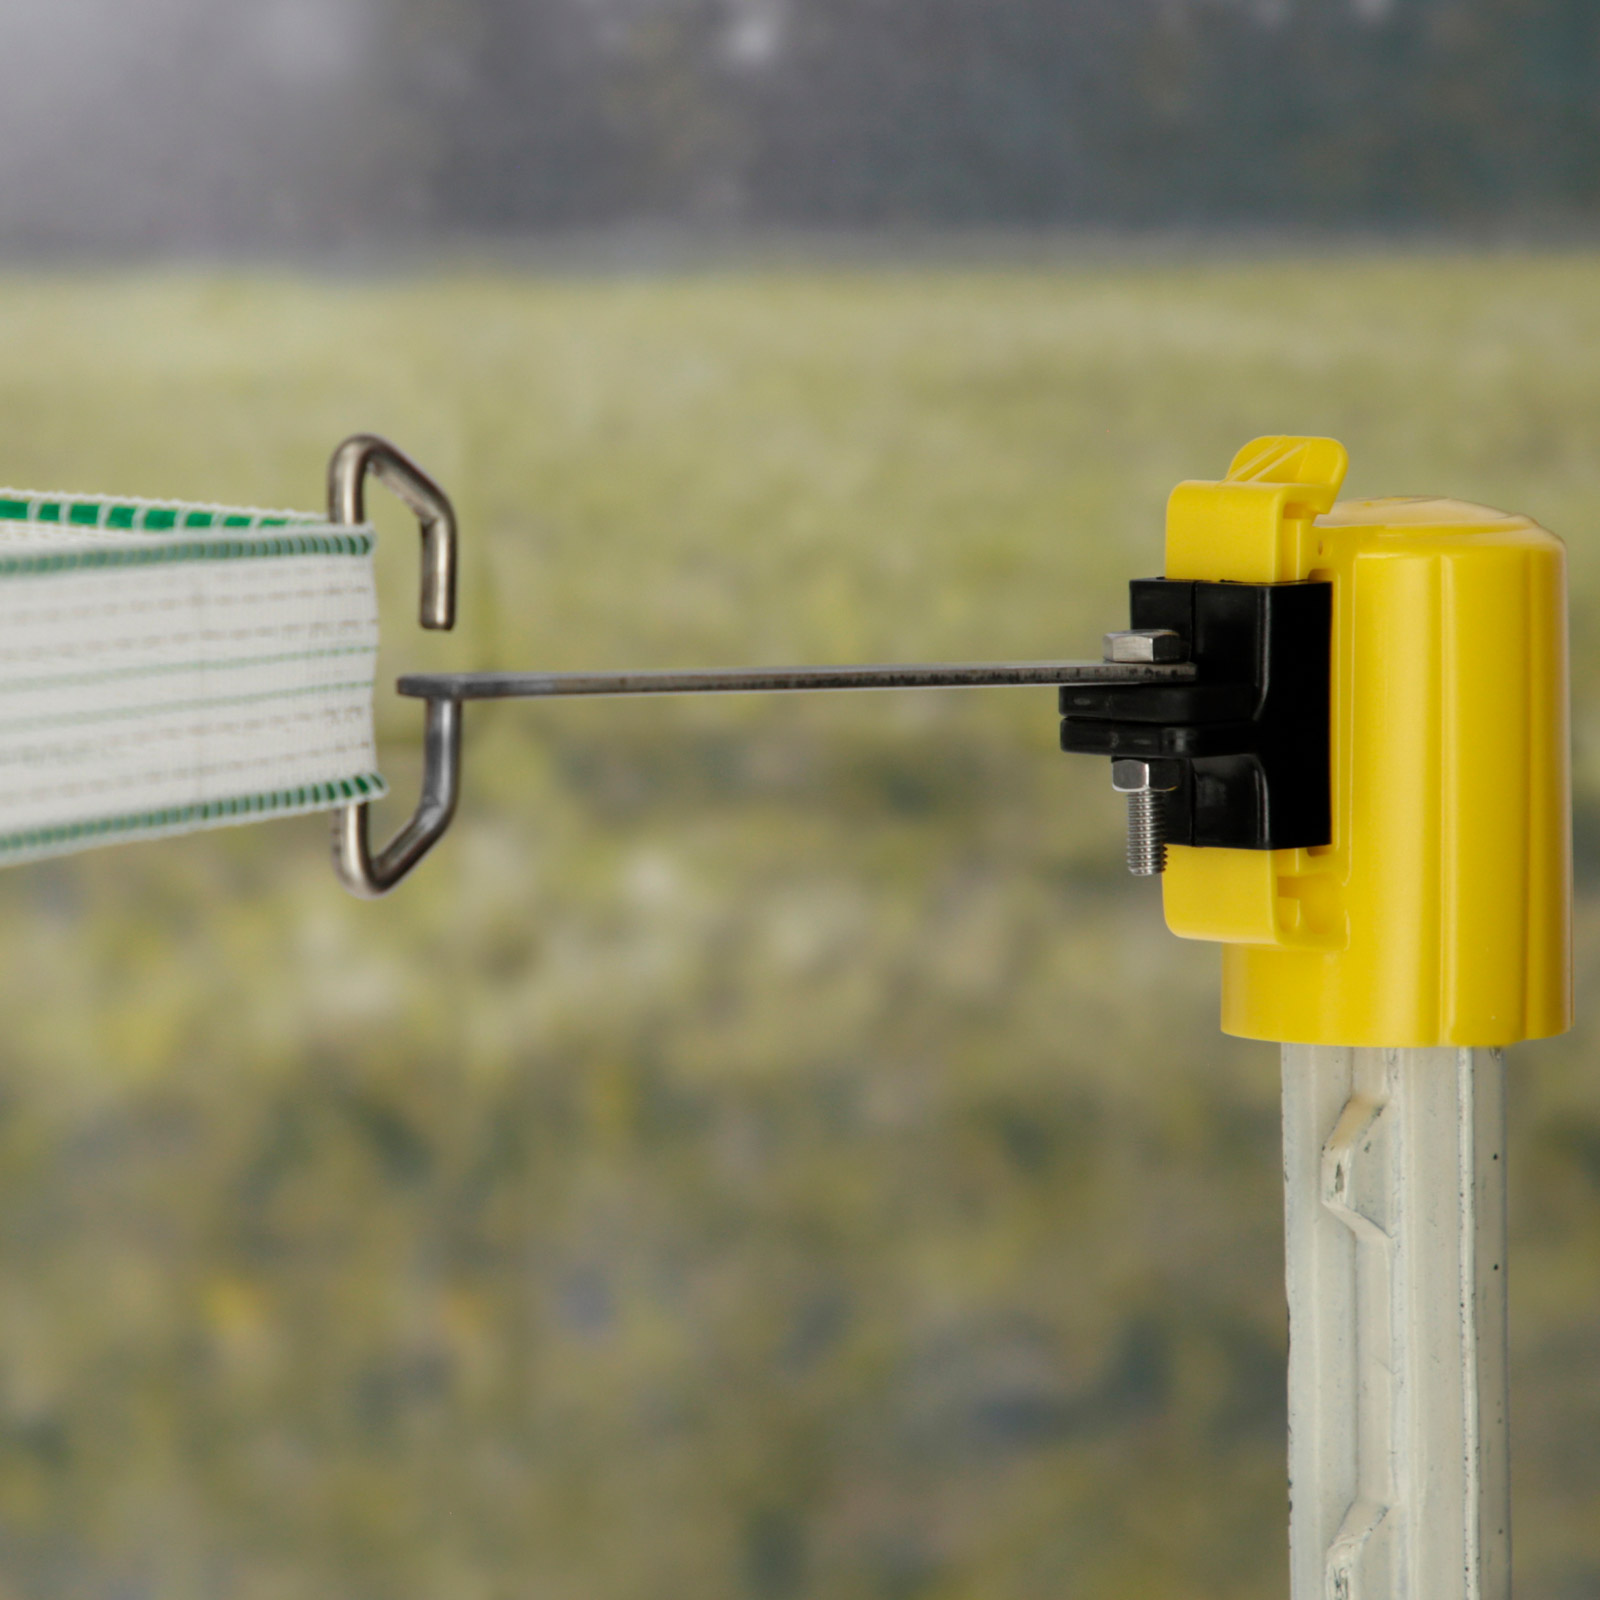 4x Isolateur de tête d'angle de clôture électrique pour rubans, cordes, fils sur T-Post jaune